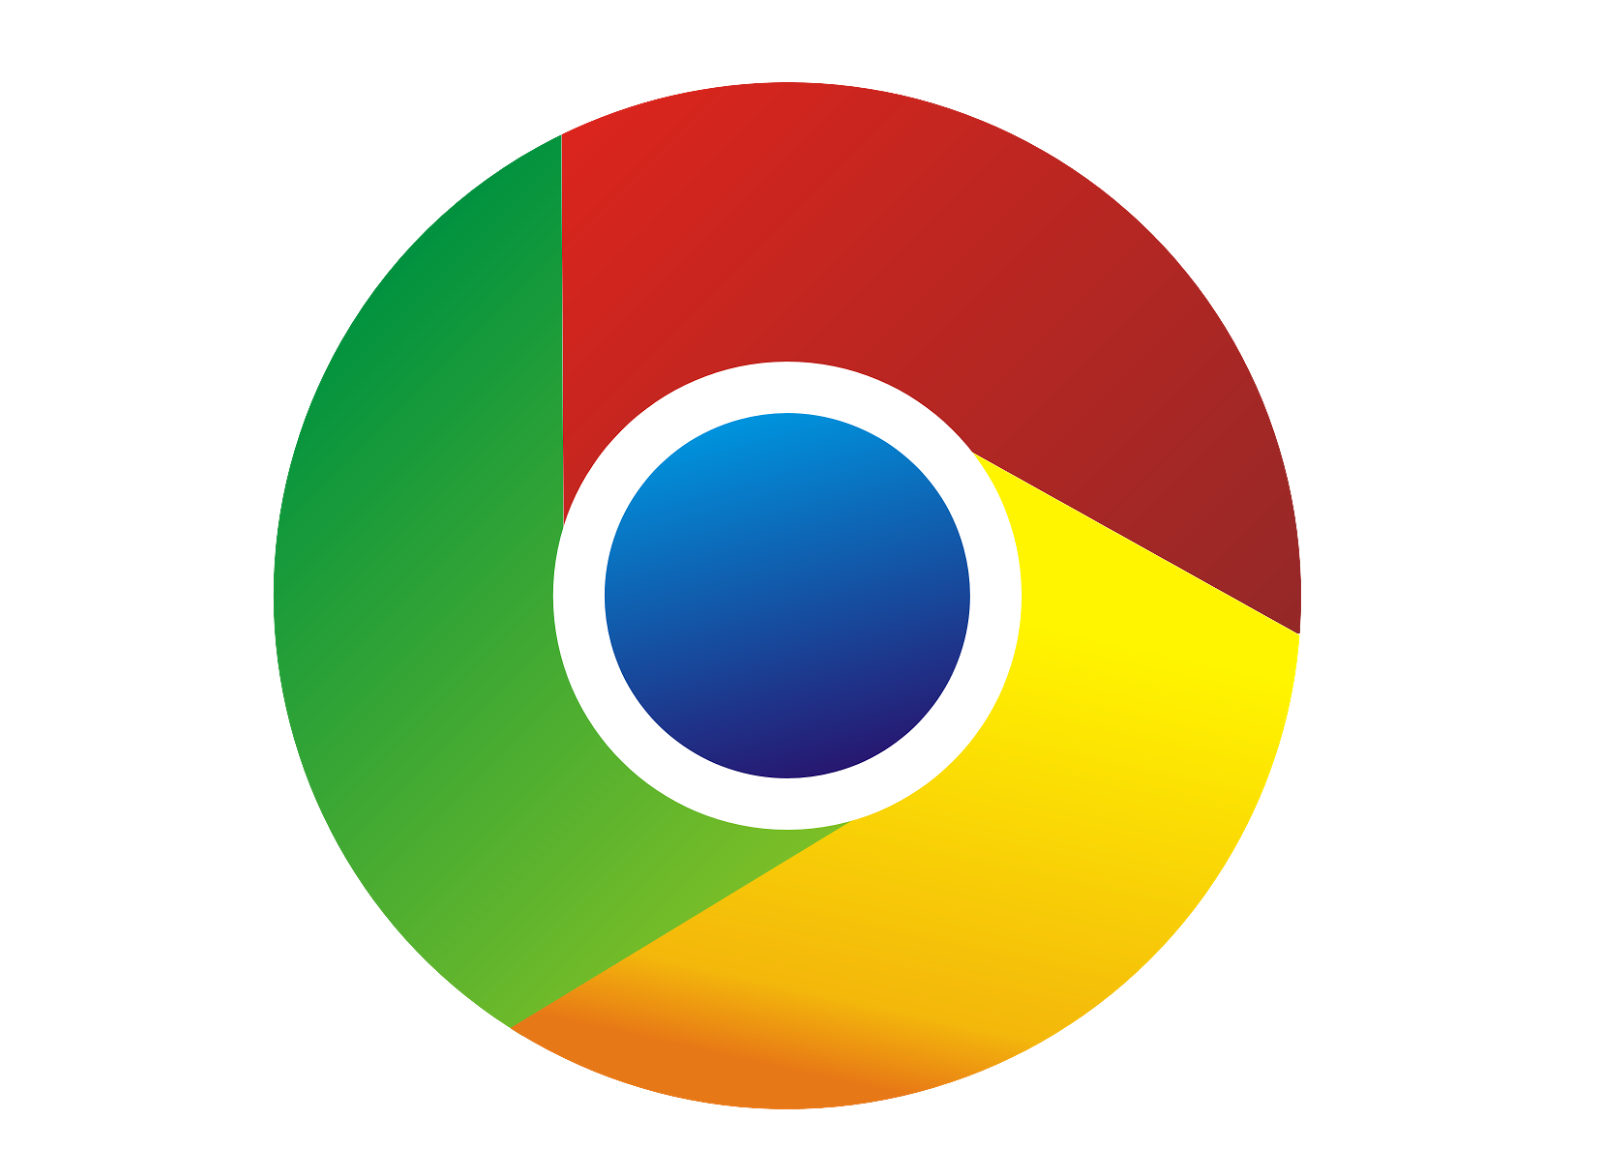 Belajar Membuat Logo Google Chrome di Coreldraw